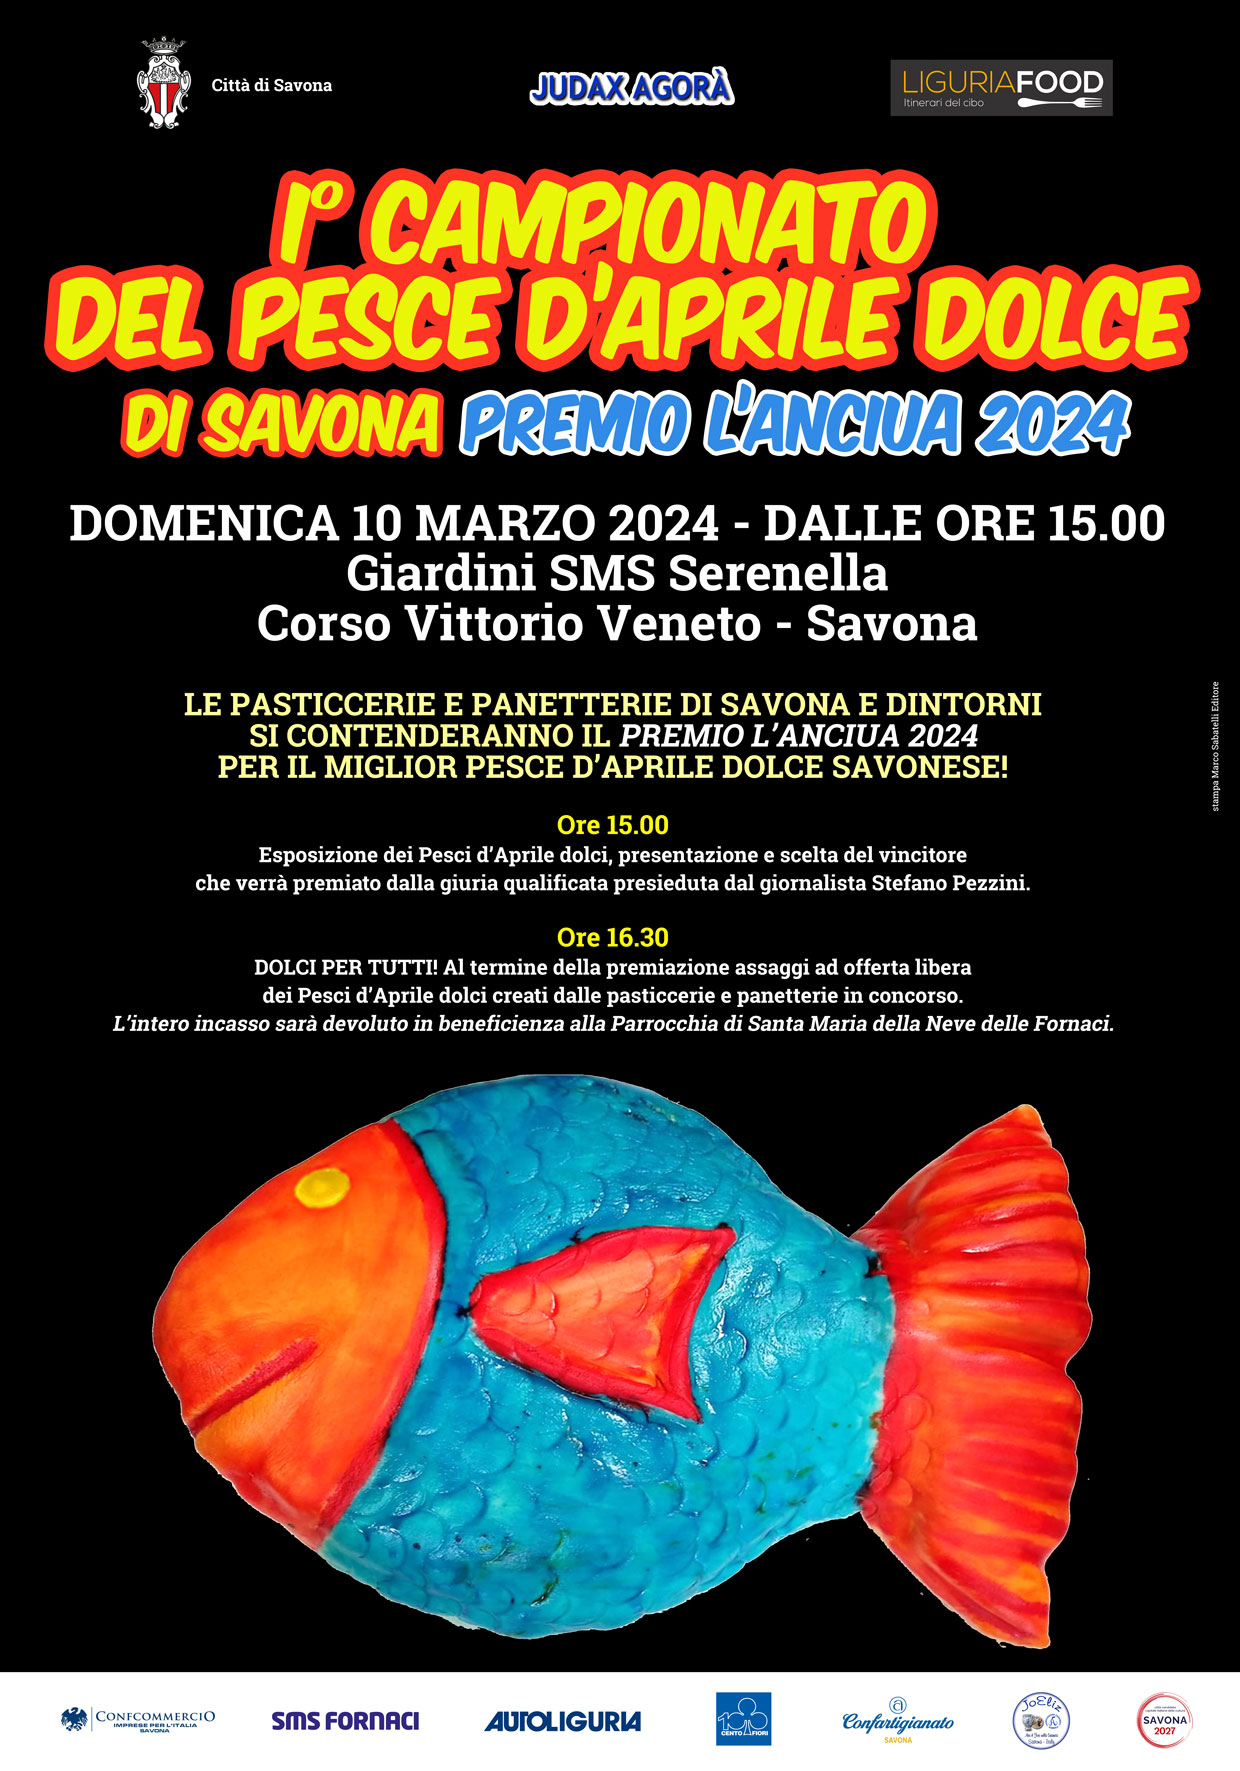 Campionato del Pesce d’Aprile Dolce di Savona- Premio L’Anciua